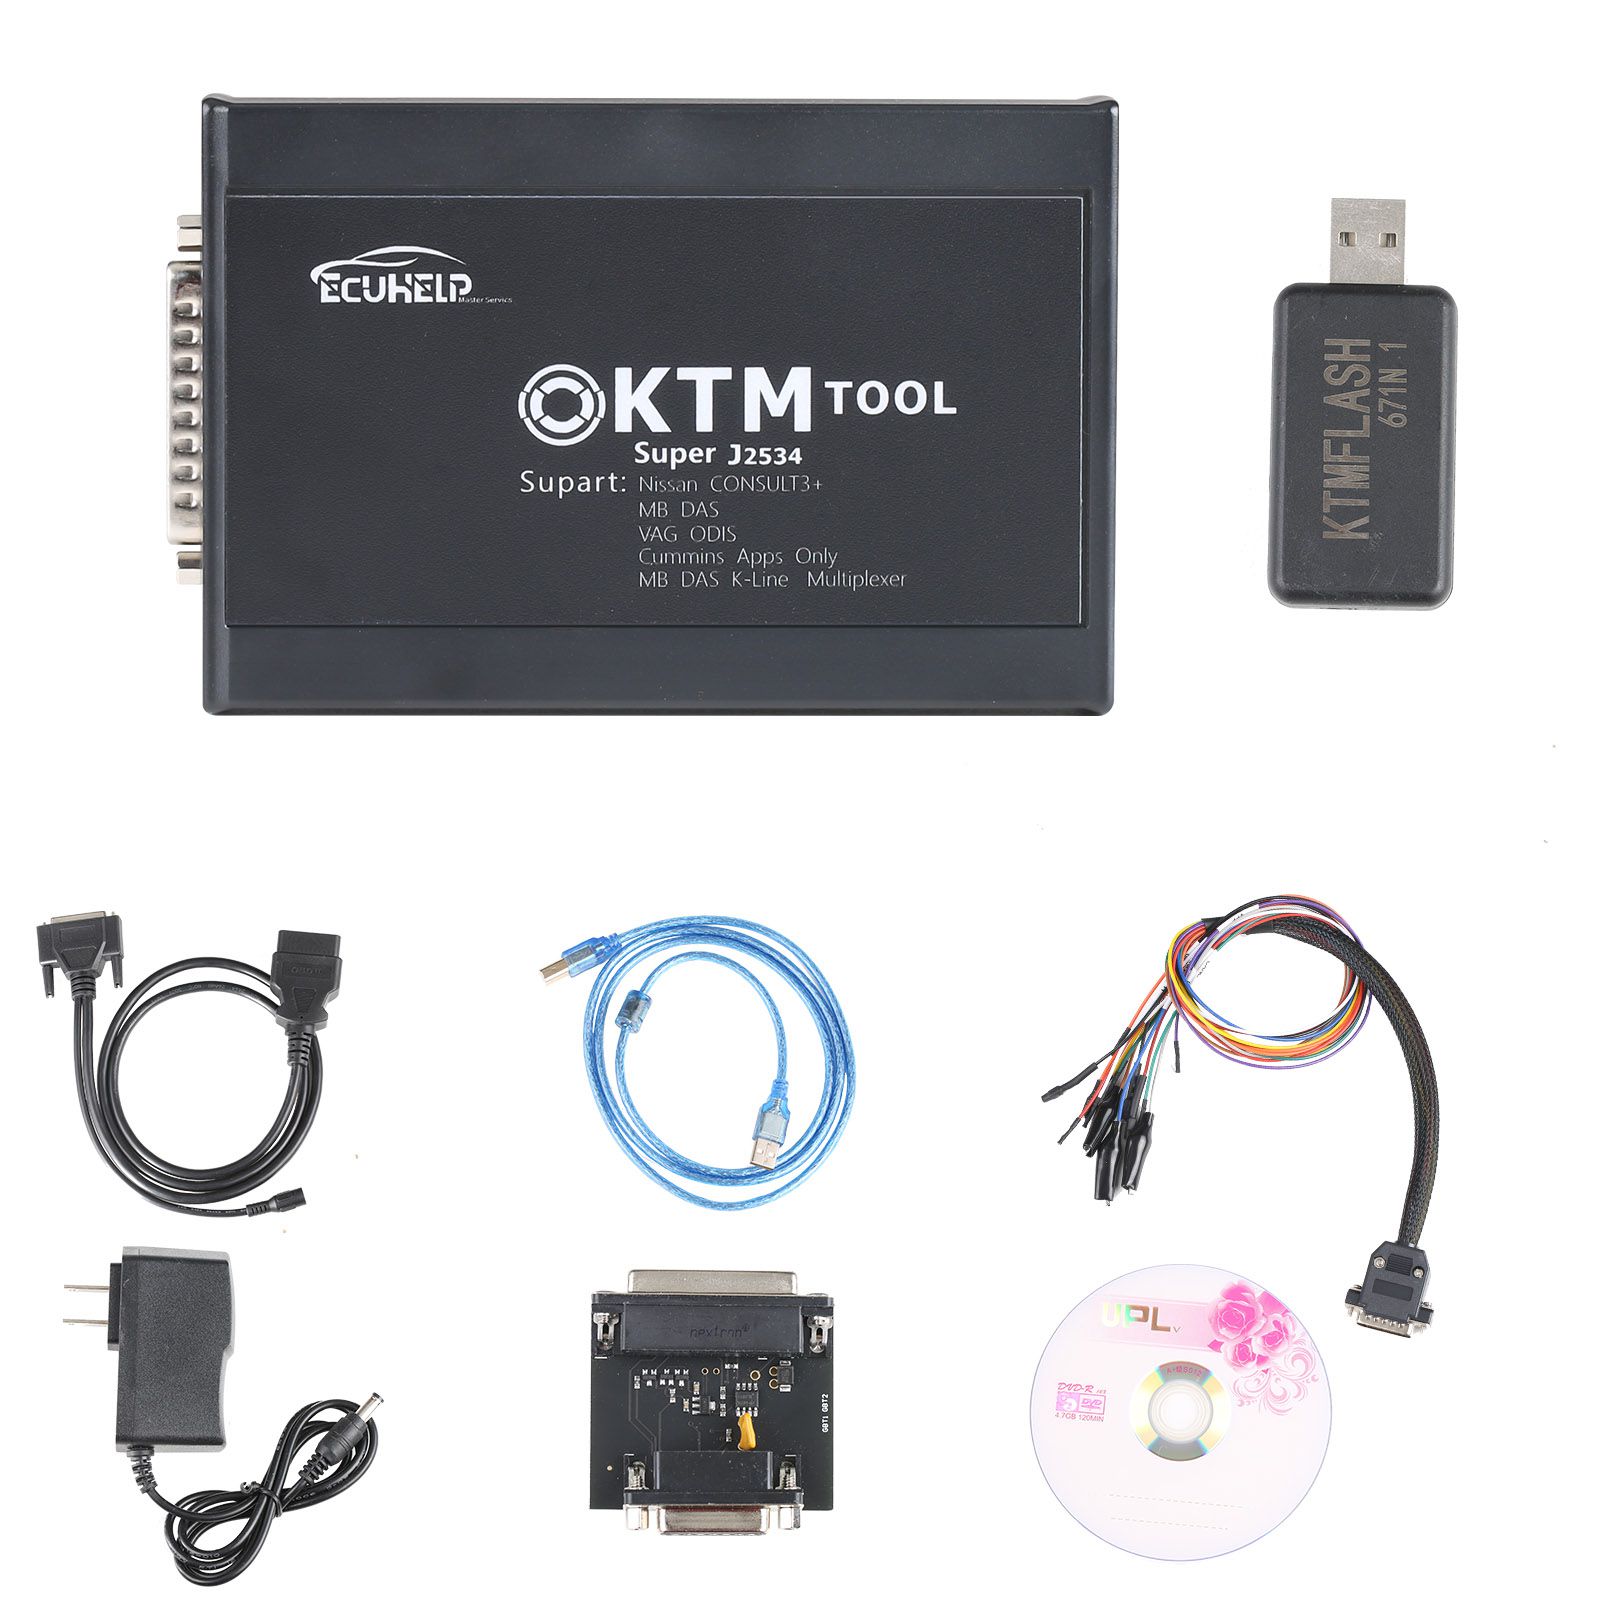 KTM200 67 in 1 KTMTool 1.20 Steuergeräte Programmierer Update Version von KTM100 Ktag Renolink OBD2 fügt 200 Steuergeräte inkl. PCR2.1 PSA SID28 hinzu